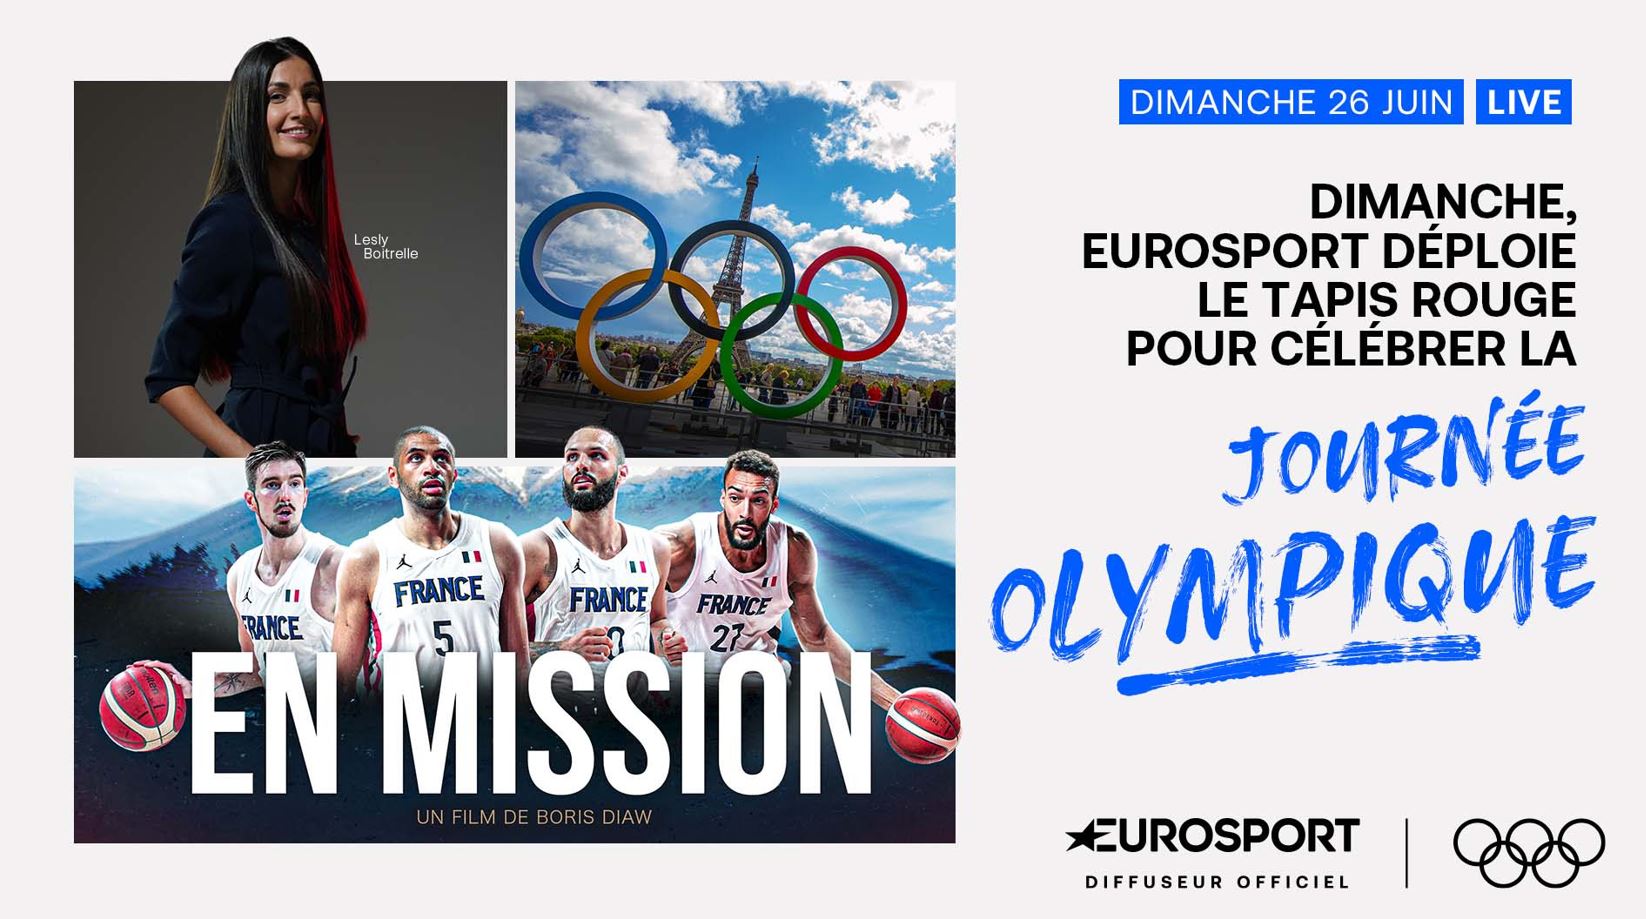 Eurosport déploie le tapis rouge ce dimanche 26 juin 2022 pour célébrer la Journée olympique